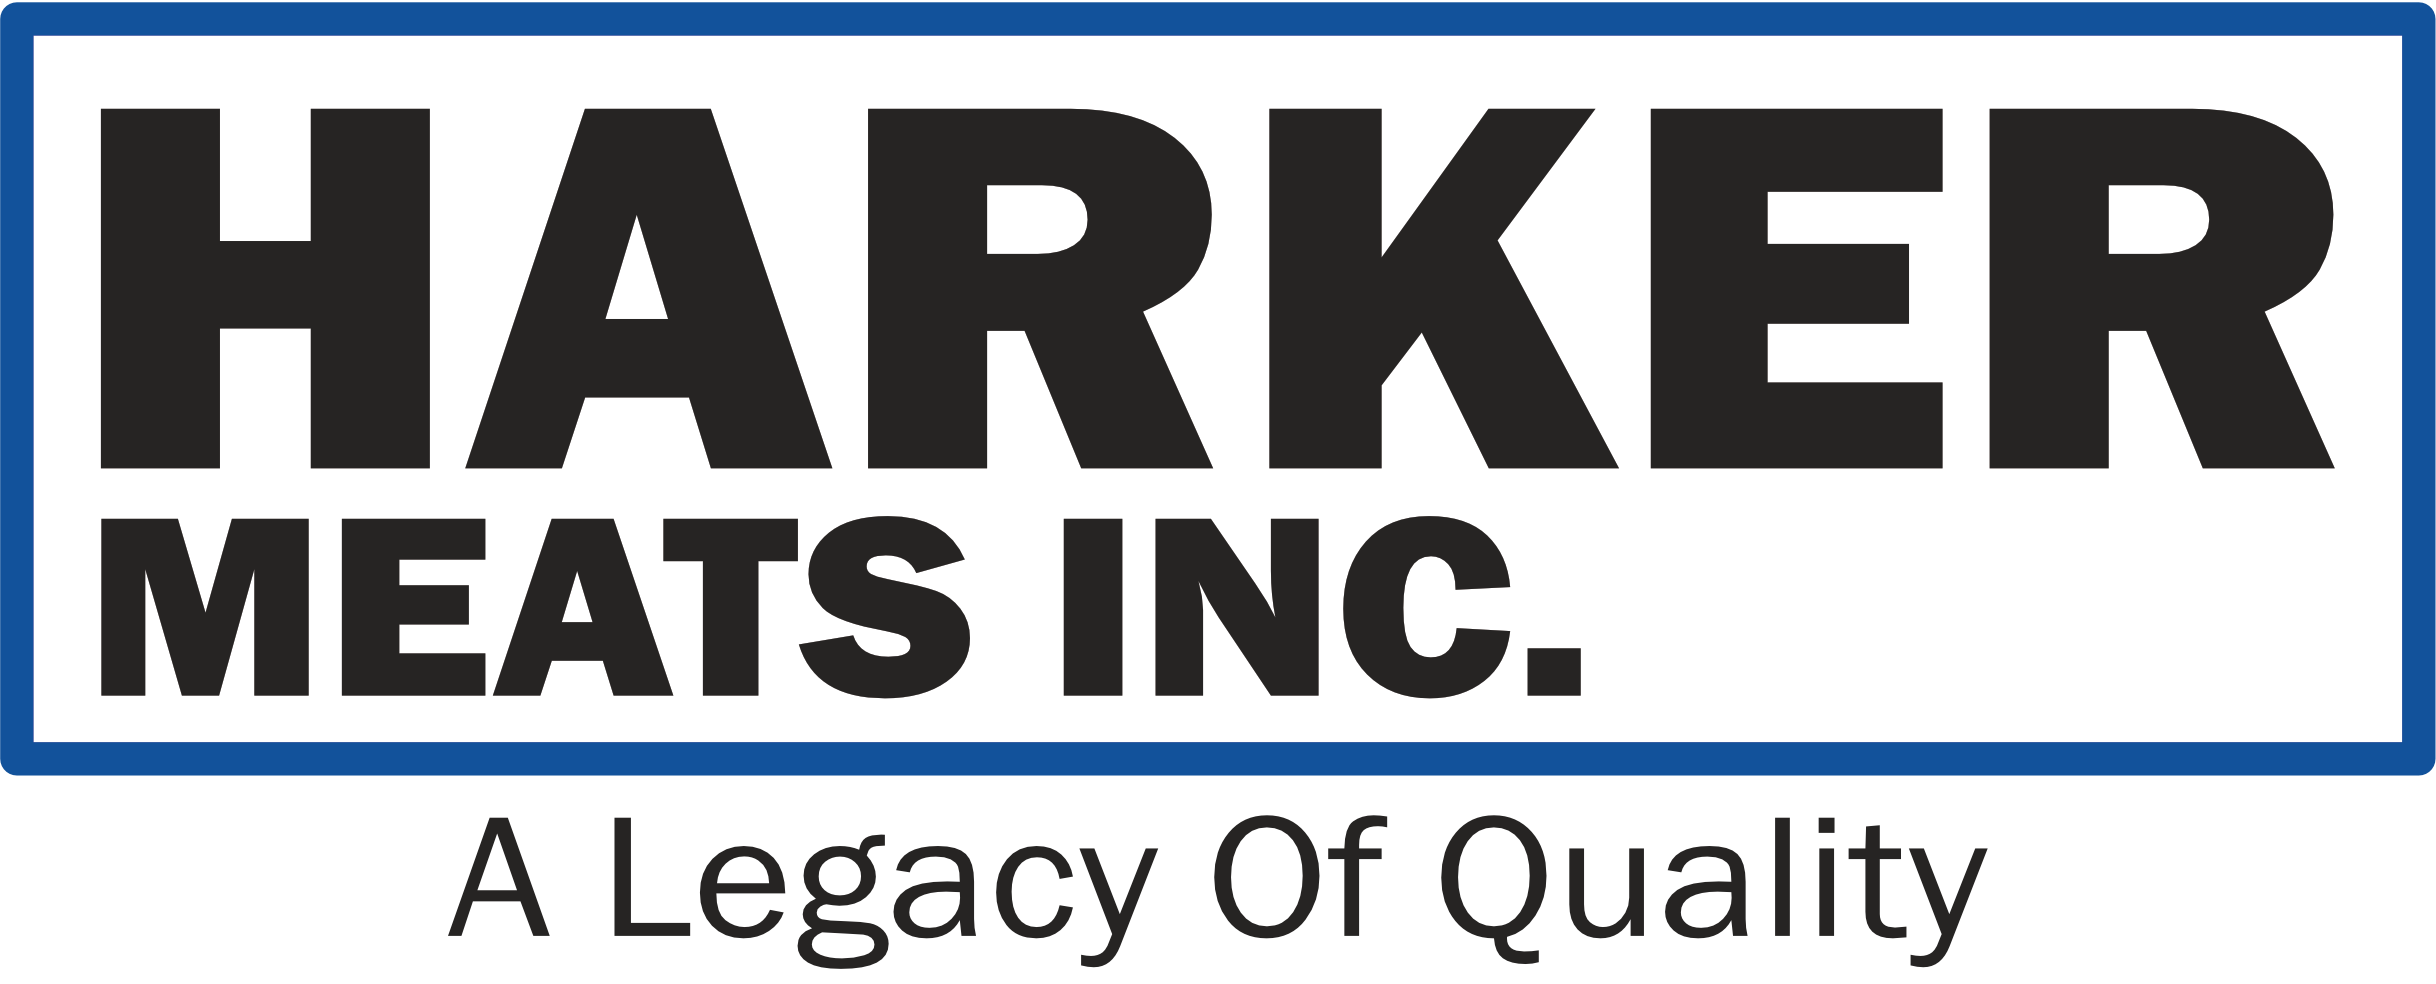 Harker Meats logo